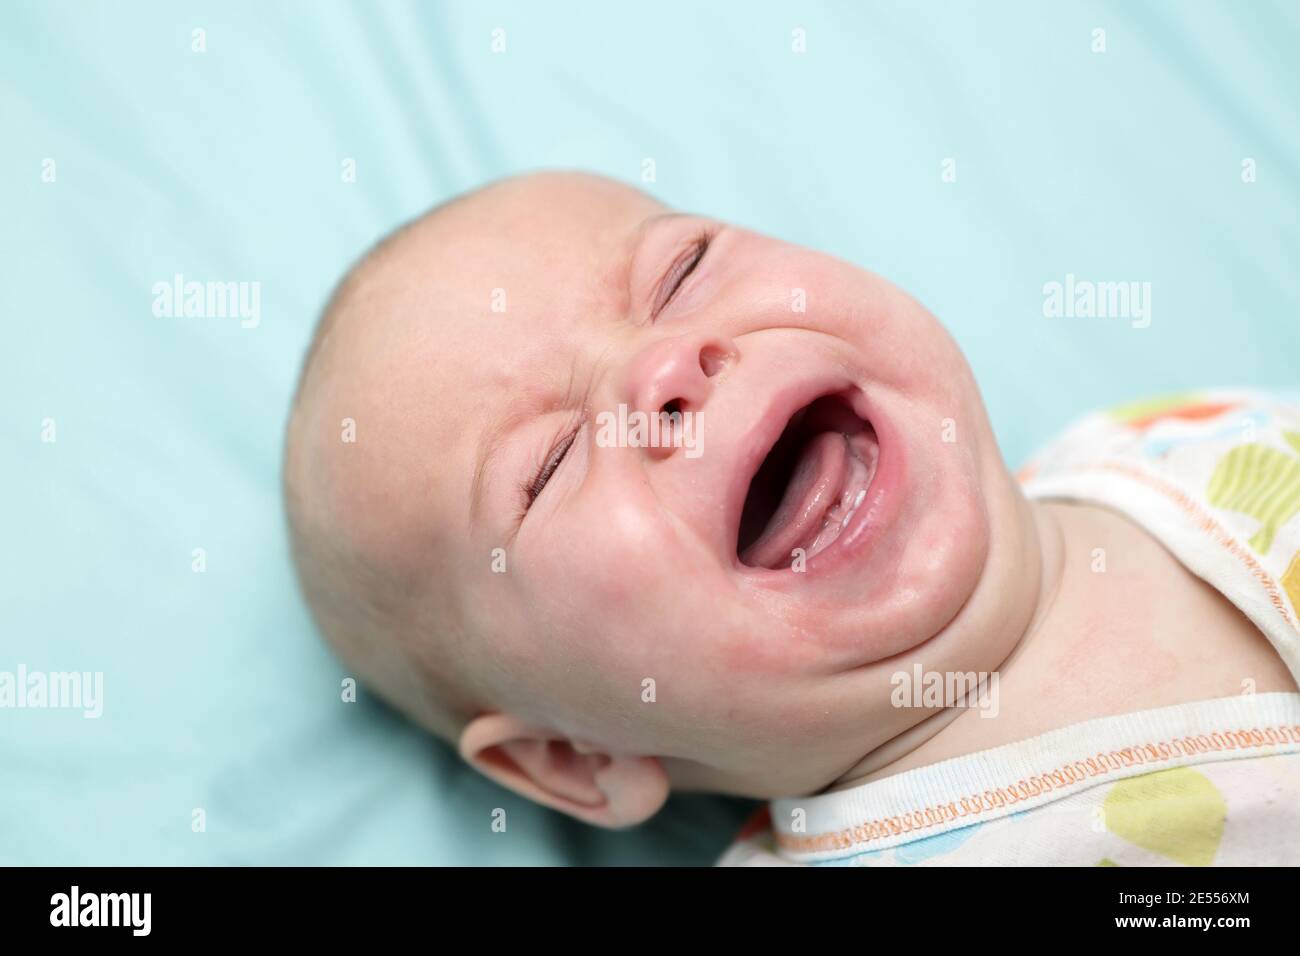 Плачь ребенка при рождении. Младенец плачет. Новорожденный. Плач новорожденного. Новорожденный ребенок плачет.